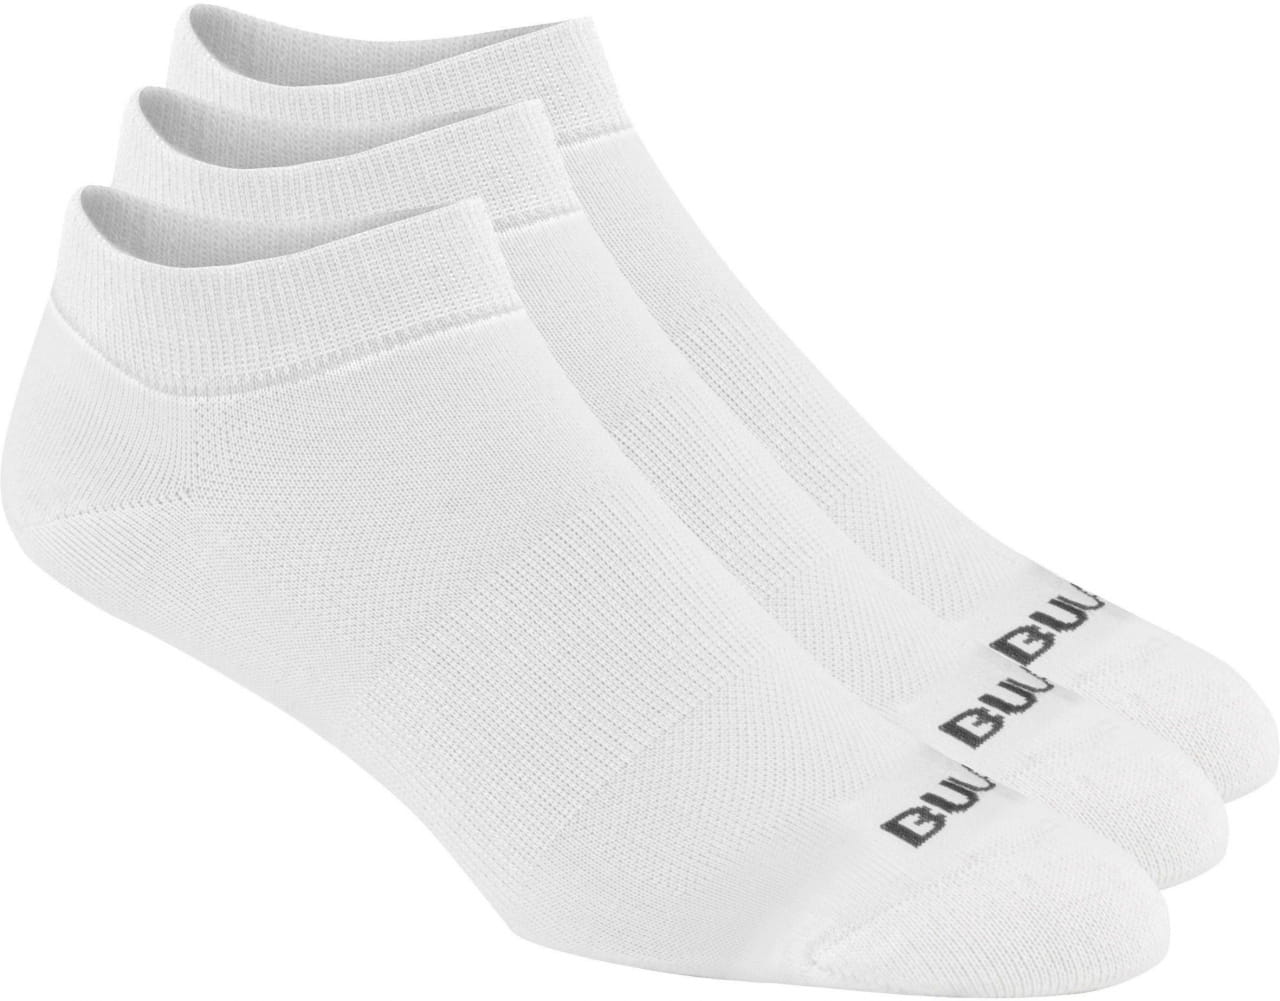 Мъжки спортни чорапи Bula Safe Socks 3Pk